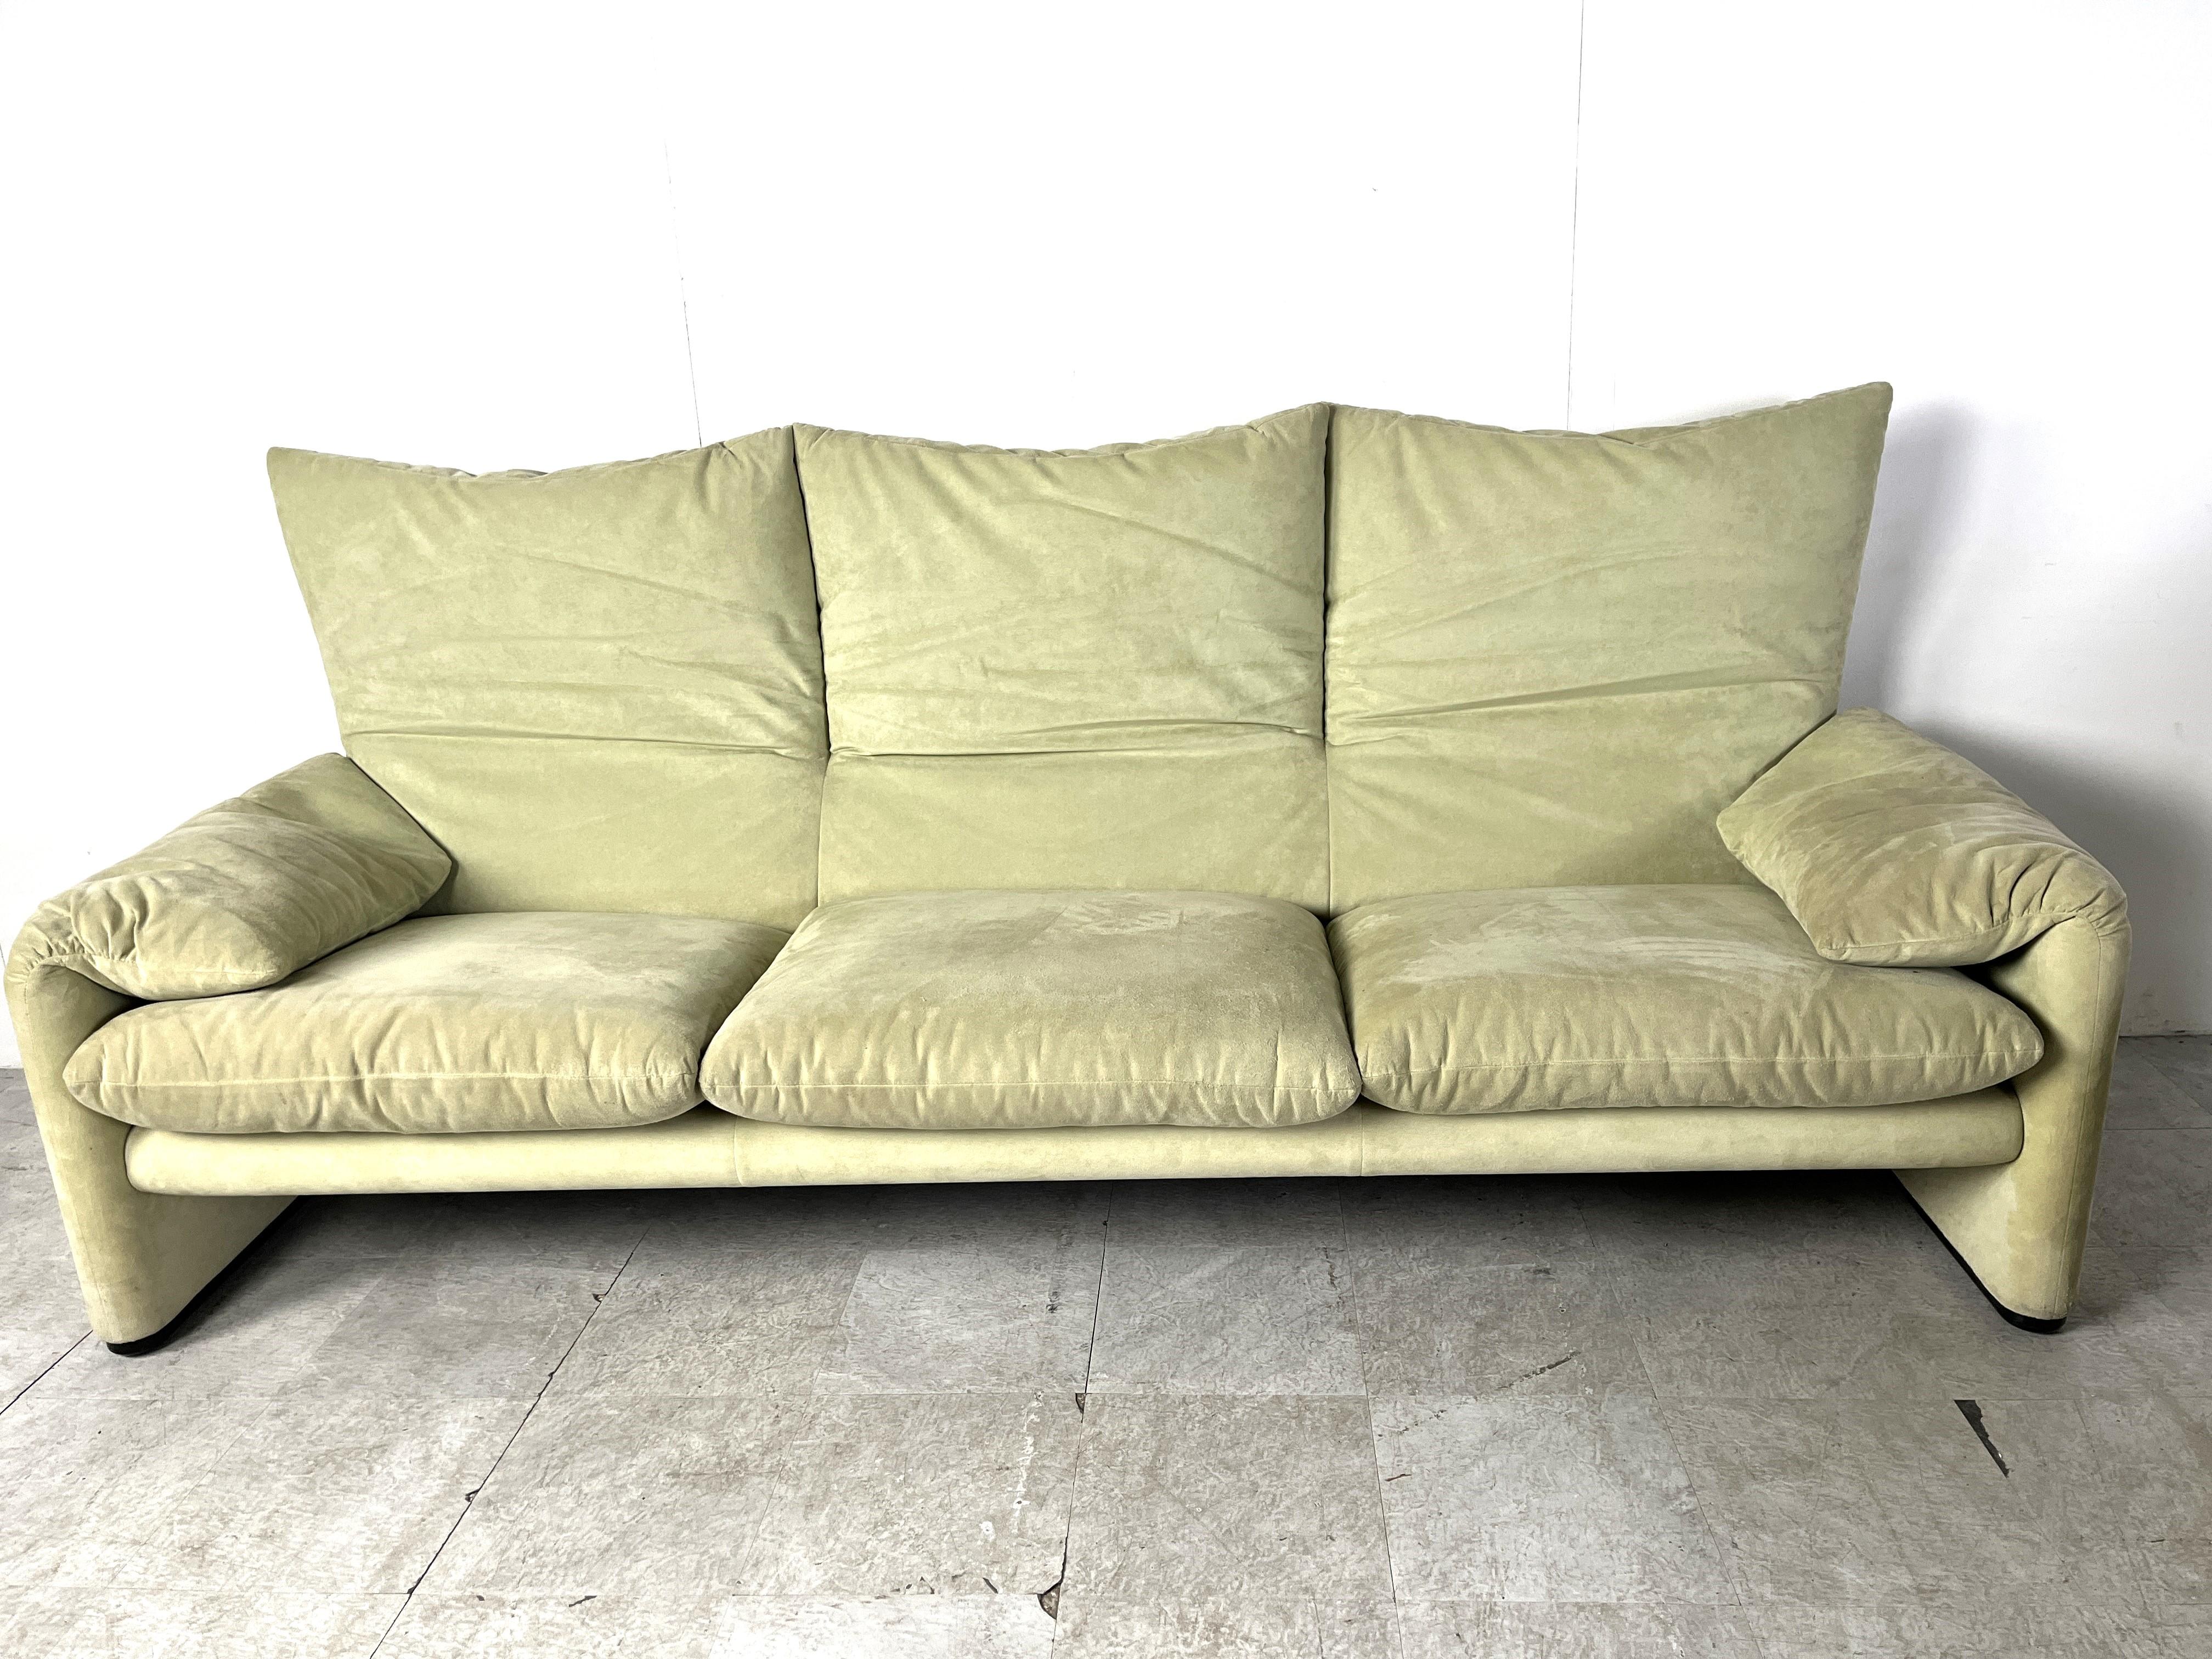 Late 20th Century Maralunga sofa set by Vico Magistretti for Cassina